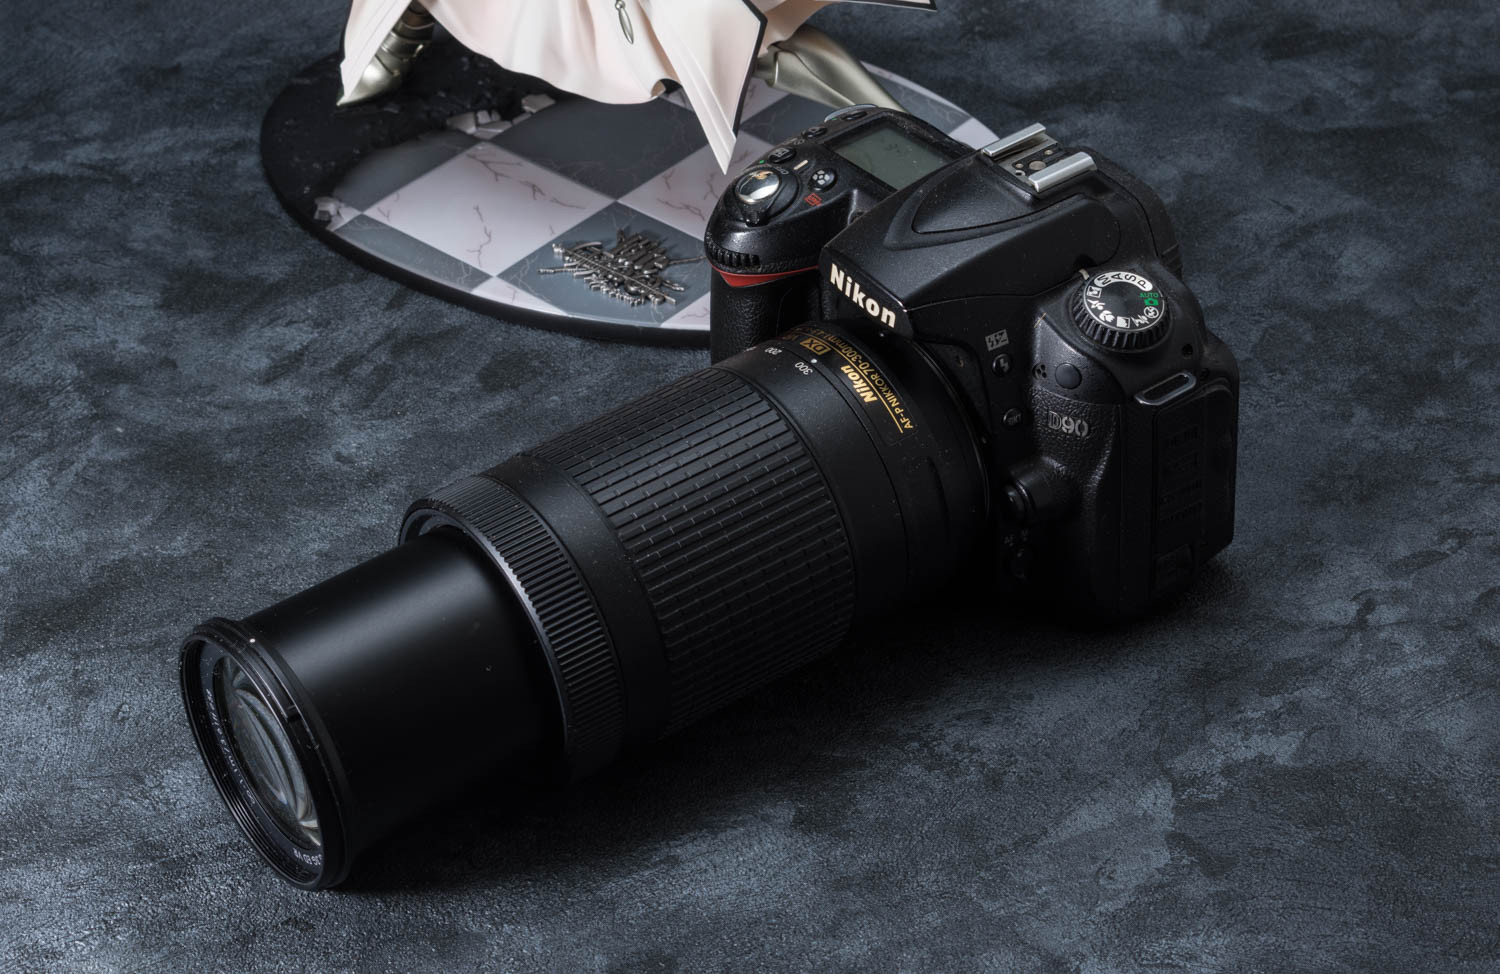 Nikon AF-P DX NIKKOR 70-300mm f/4.5-6.3G ED VR: Budget telephoto lens with vibration reduction.